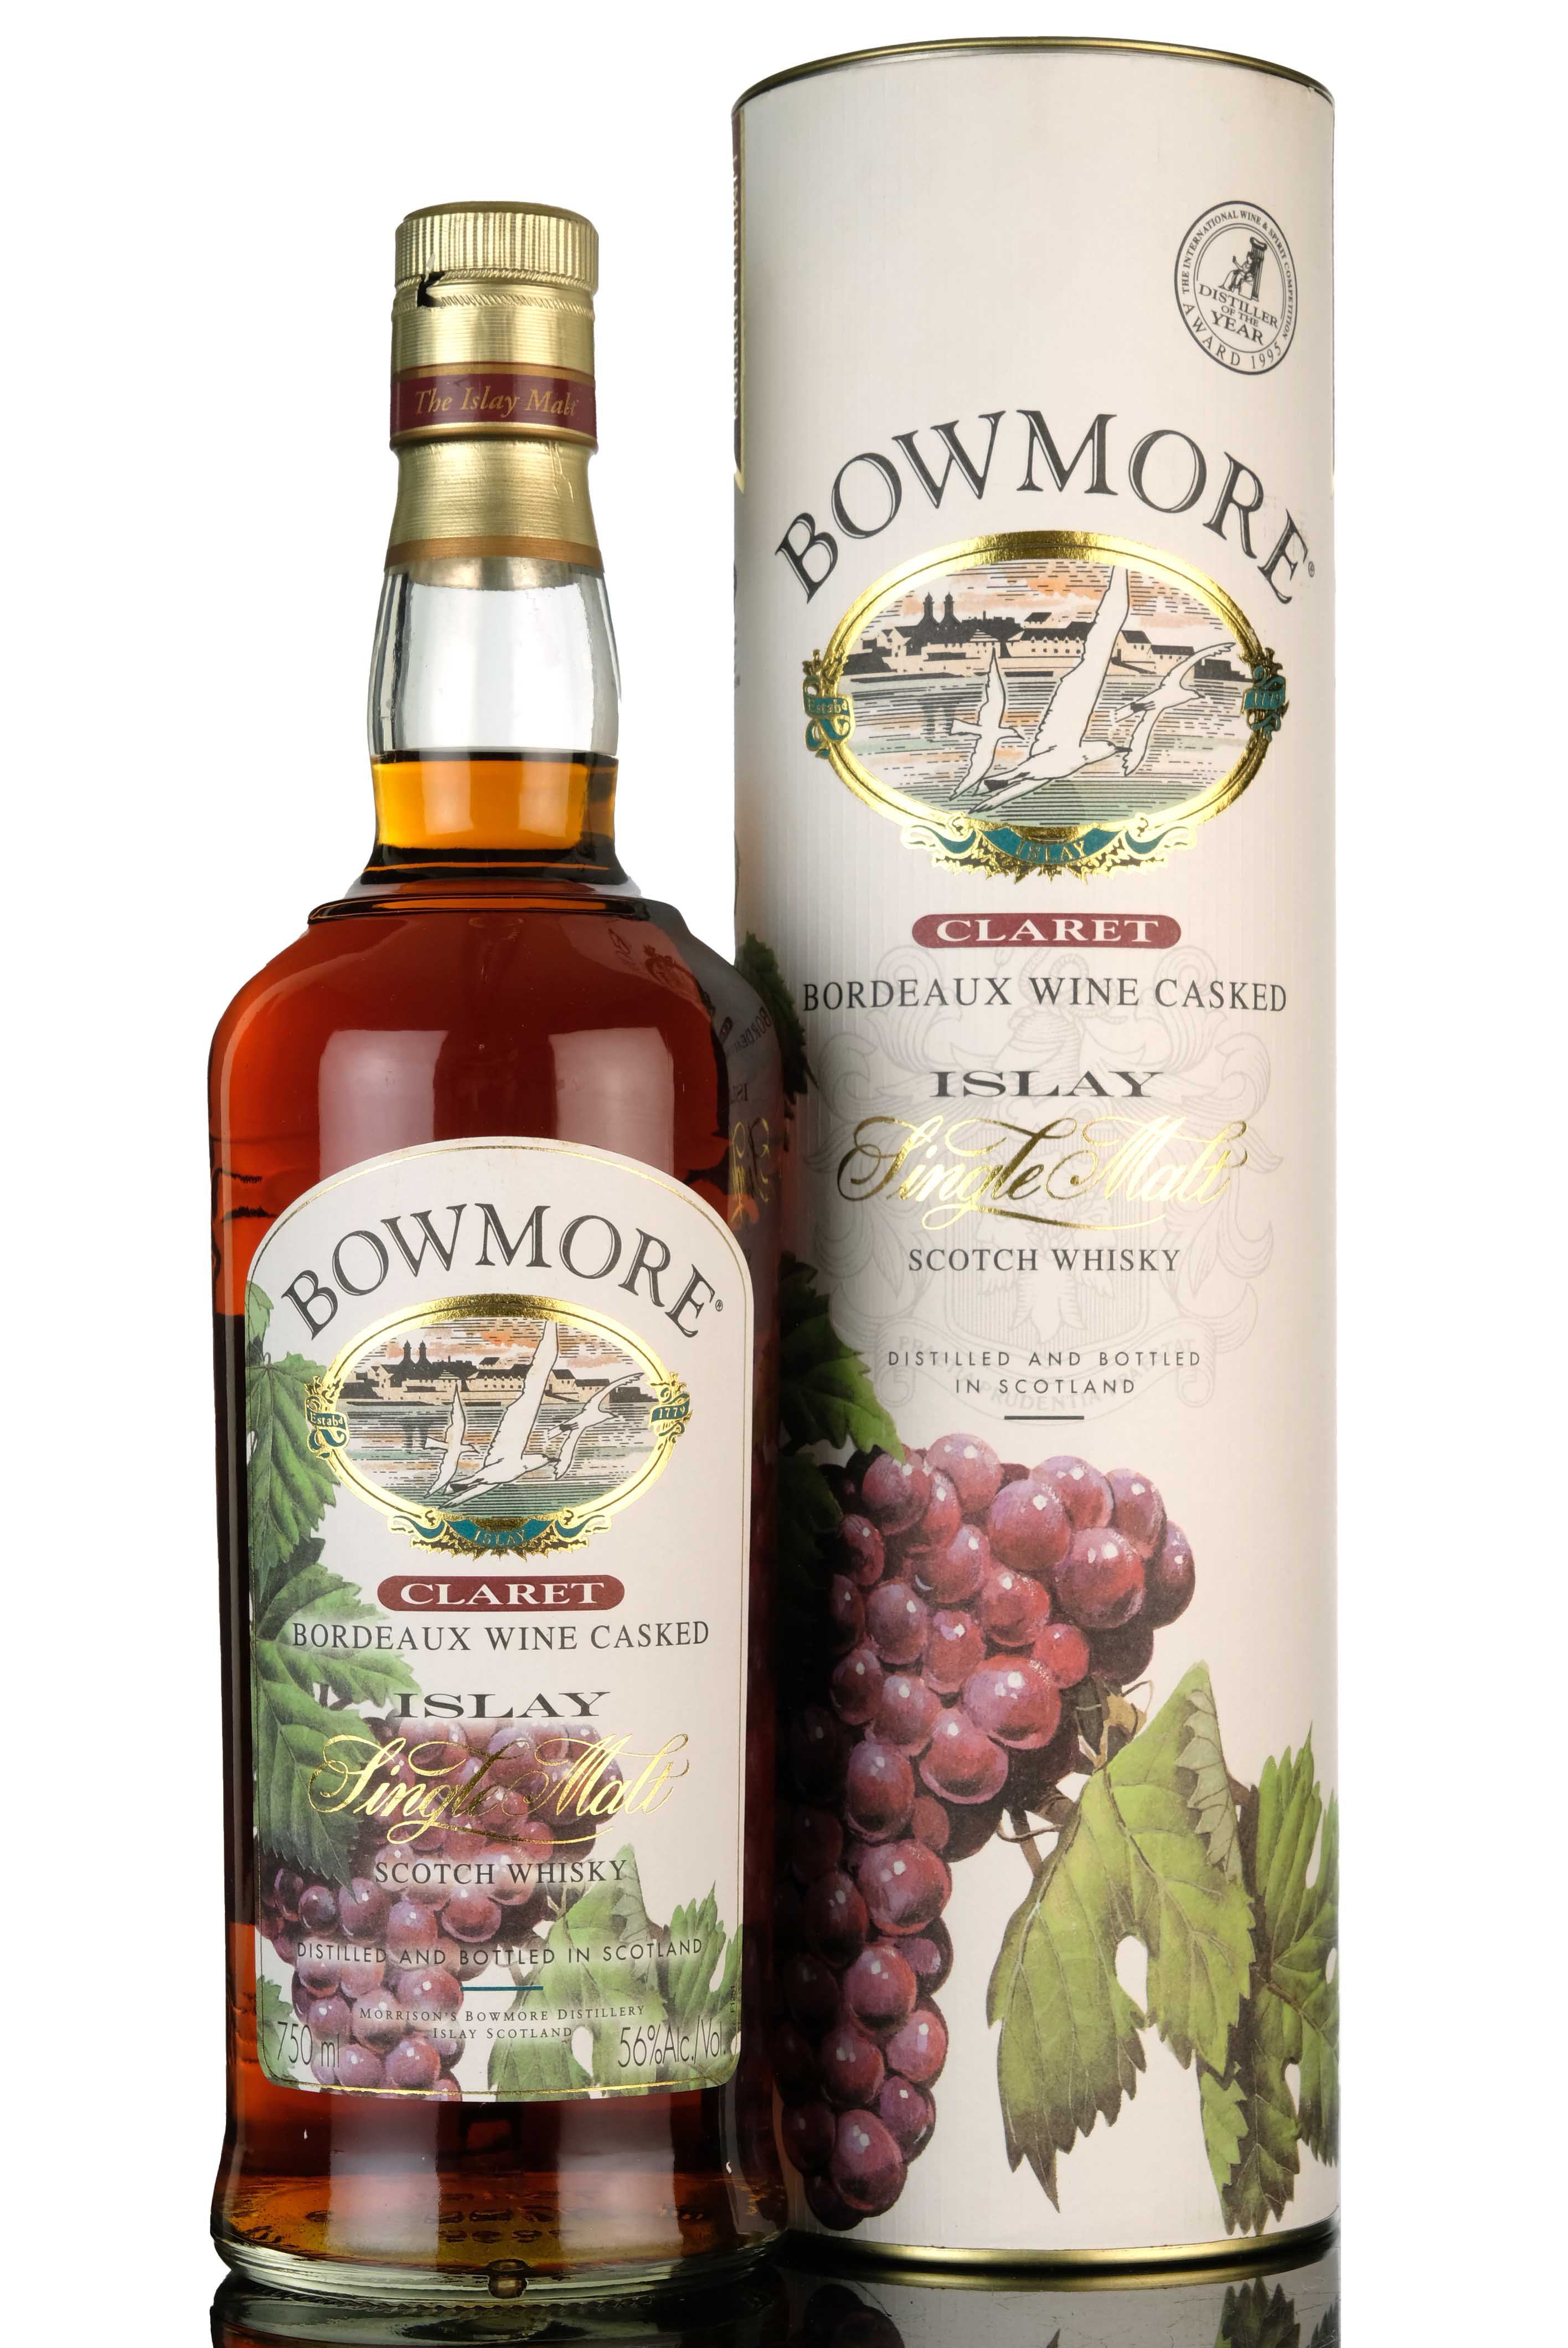 Bowmore Claret - Bordeaux Wine Cask Finish - 1999 Release